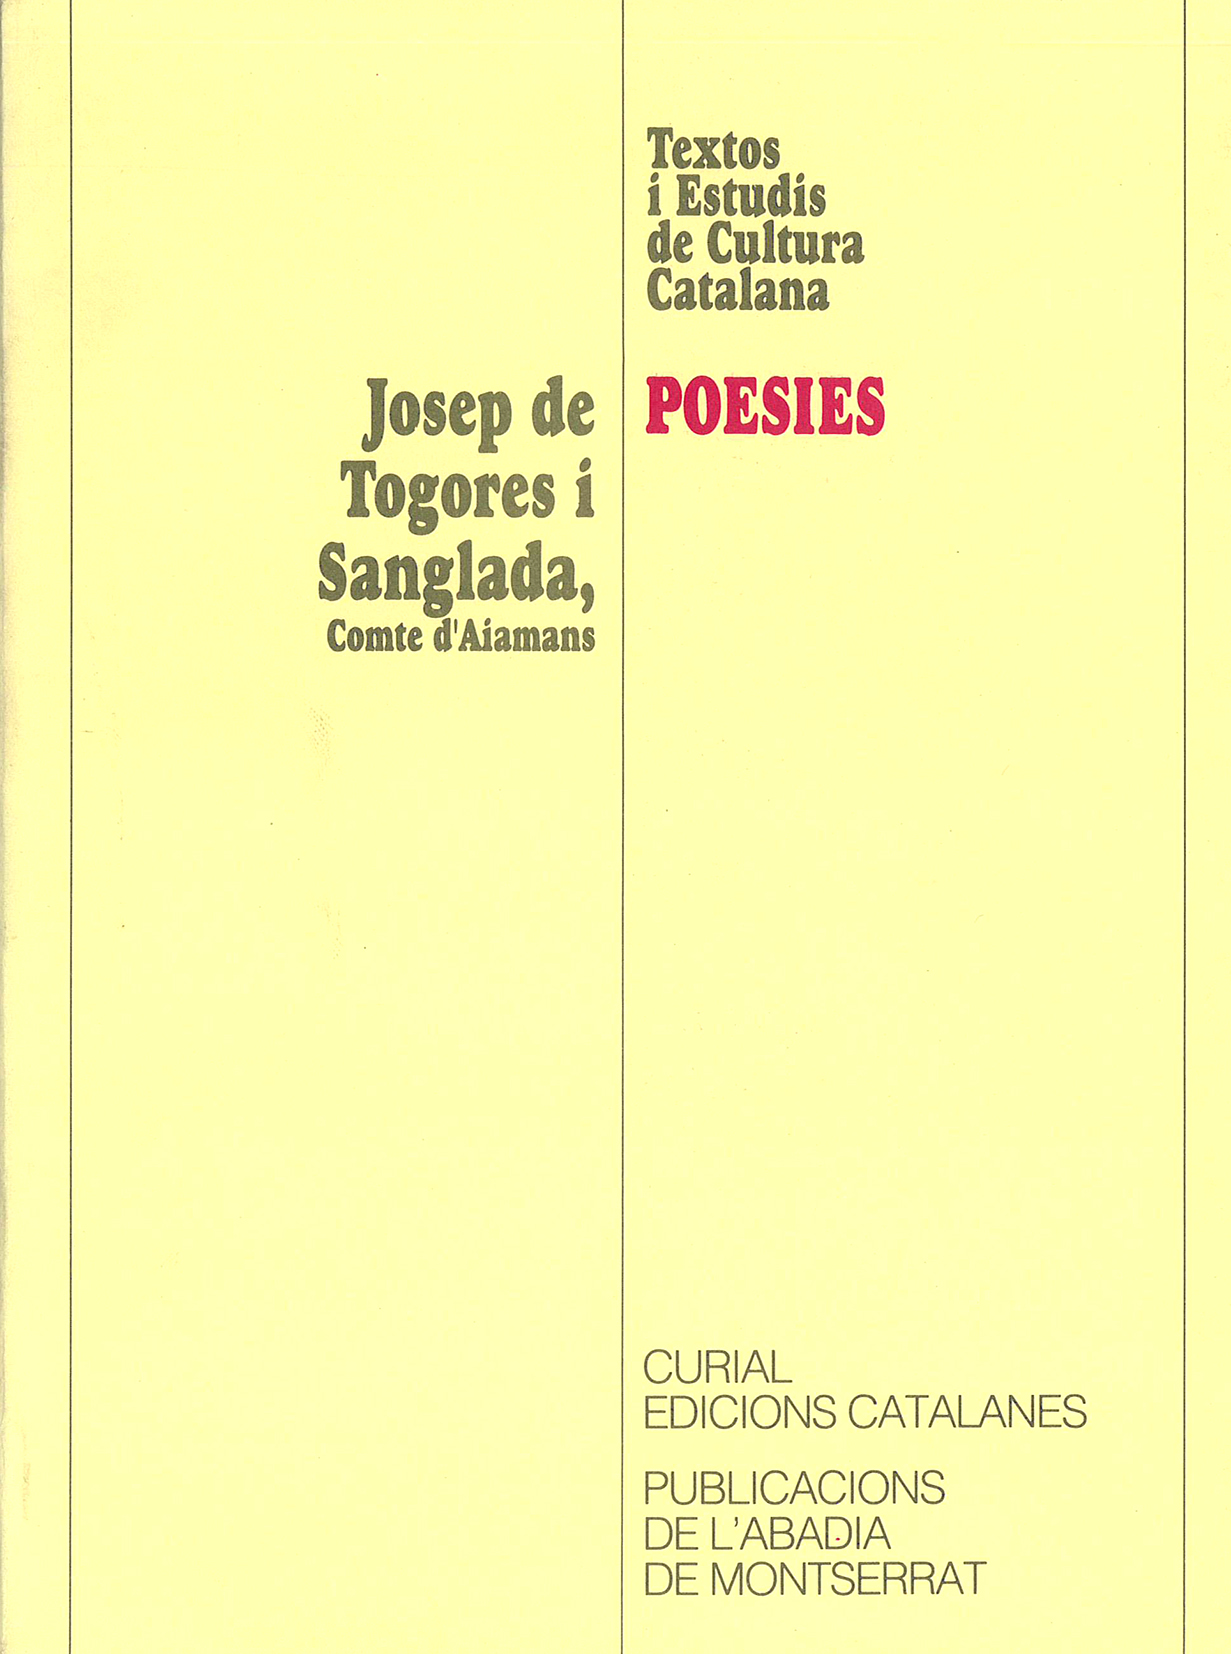 Josep de Togores i Sanglada